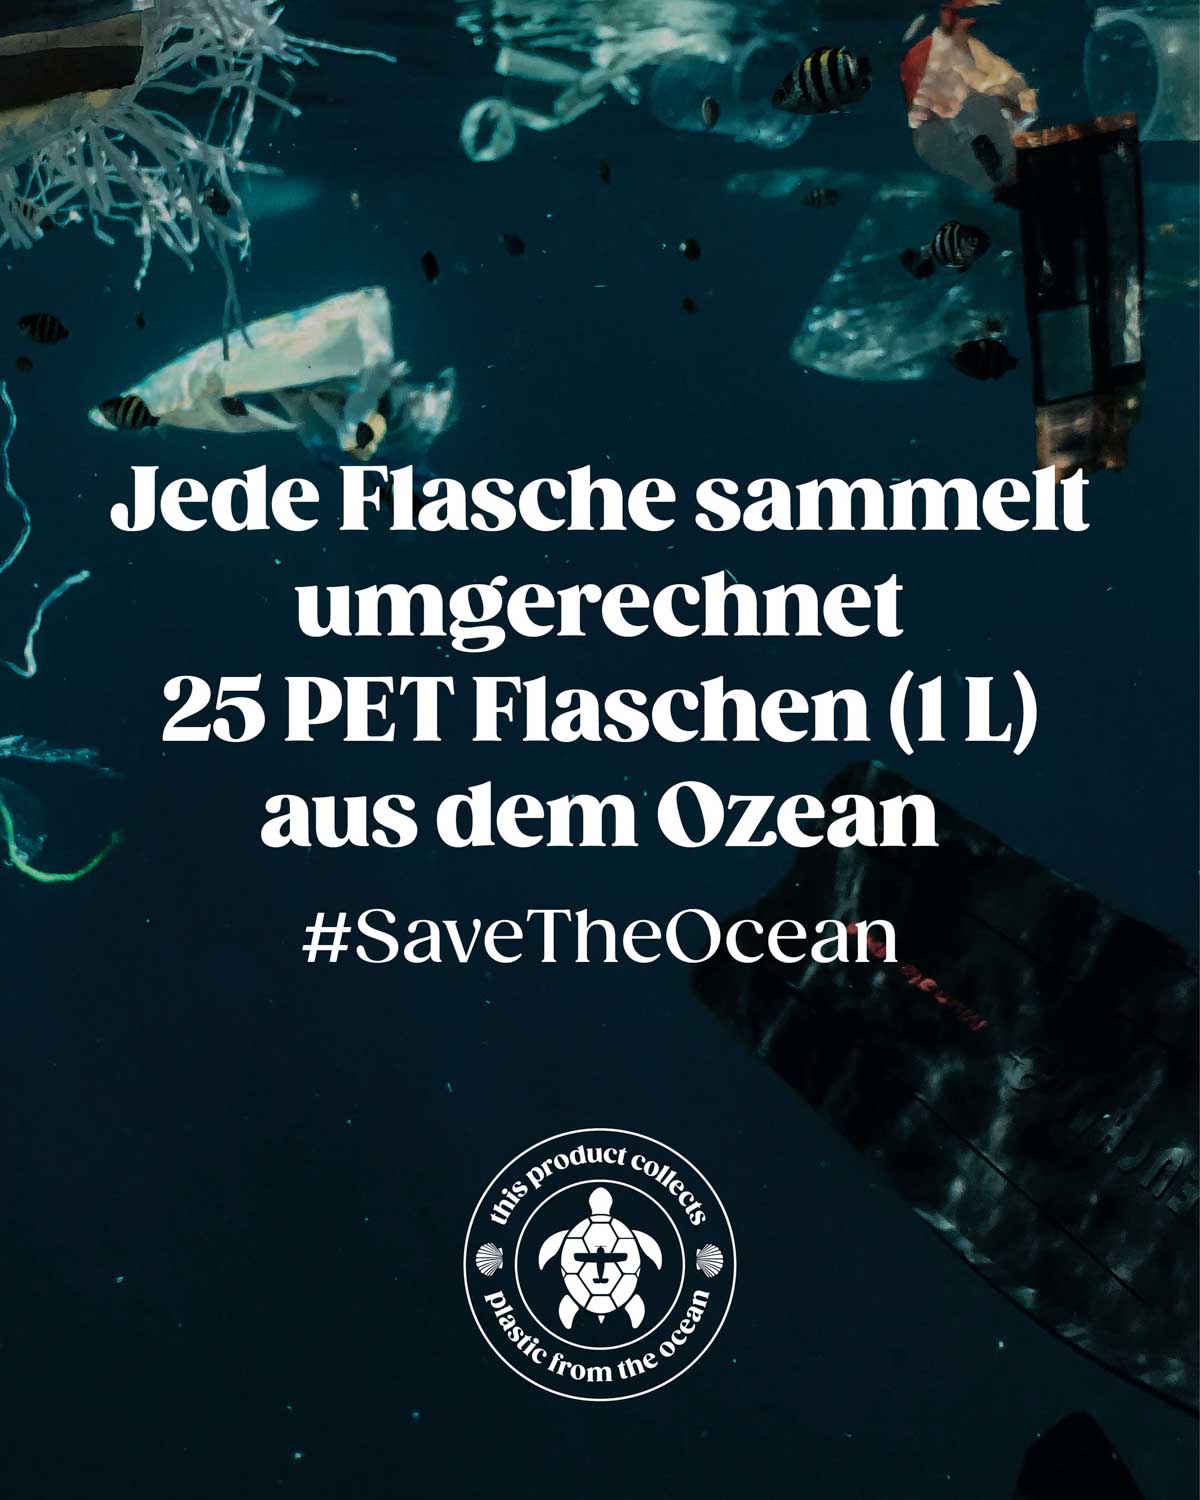 Das dargestellte Bild veranschaulicht die besorgniserregende Vermüllung der Meere durch angesammelten Plastikmüll im Meer. Mit jedem Verkauf einer BIRDS-Flasche können wir etwa 25 PET-Flaschen (1L) aus dem Ozean bergen. Wir engagieren uns aktiv für diese bedeutende Mission in Zusammenarbeit mit der Organisation Plastic Free Planet und unterstützen sie mit dem Hashtag #savetheocean.